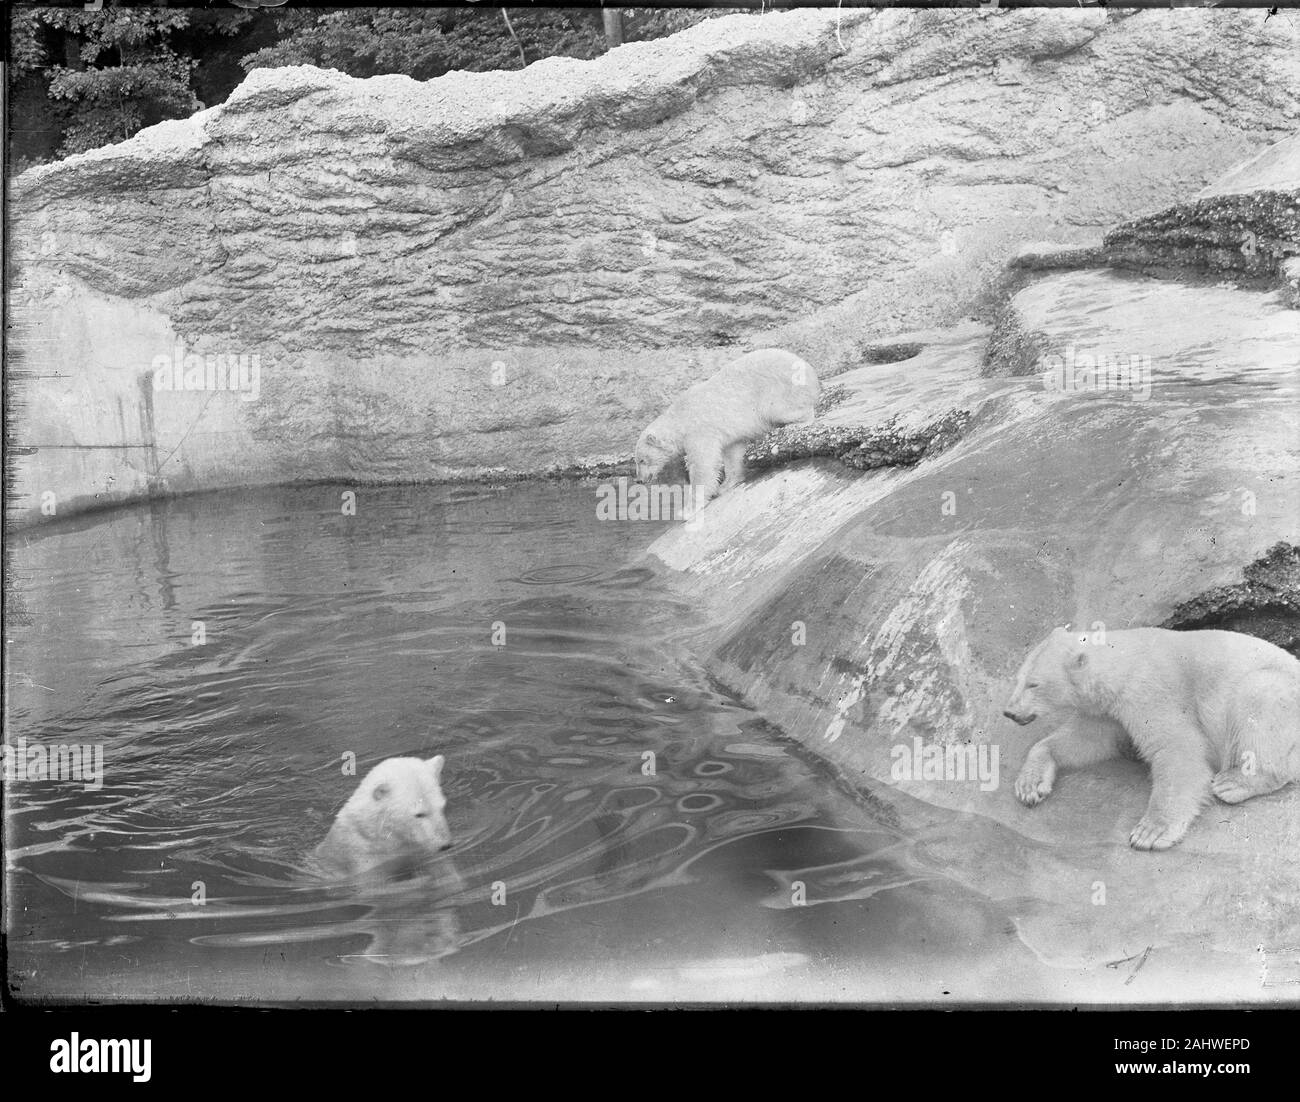 Der 1911 eröffnete Tierpark Hellabrunn hielt als einer der ersten Zoos in Deutschland seit Beginn drei Eisbären in einem Freigehege. Sie wurden im südlichsten Teil des Tierparks in der Polarwelt gehalten. Kopie einer Originalfotografie auf Glasplatte aus der Herry W. Schaefer Sammlung.Die Aufnahme stammt aus den Jahren zwischen 1911 und 1920. Stock Photo